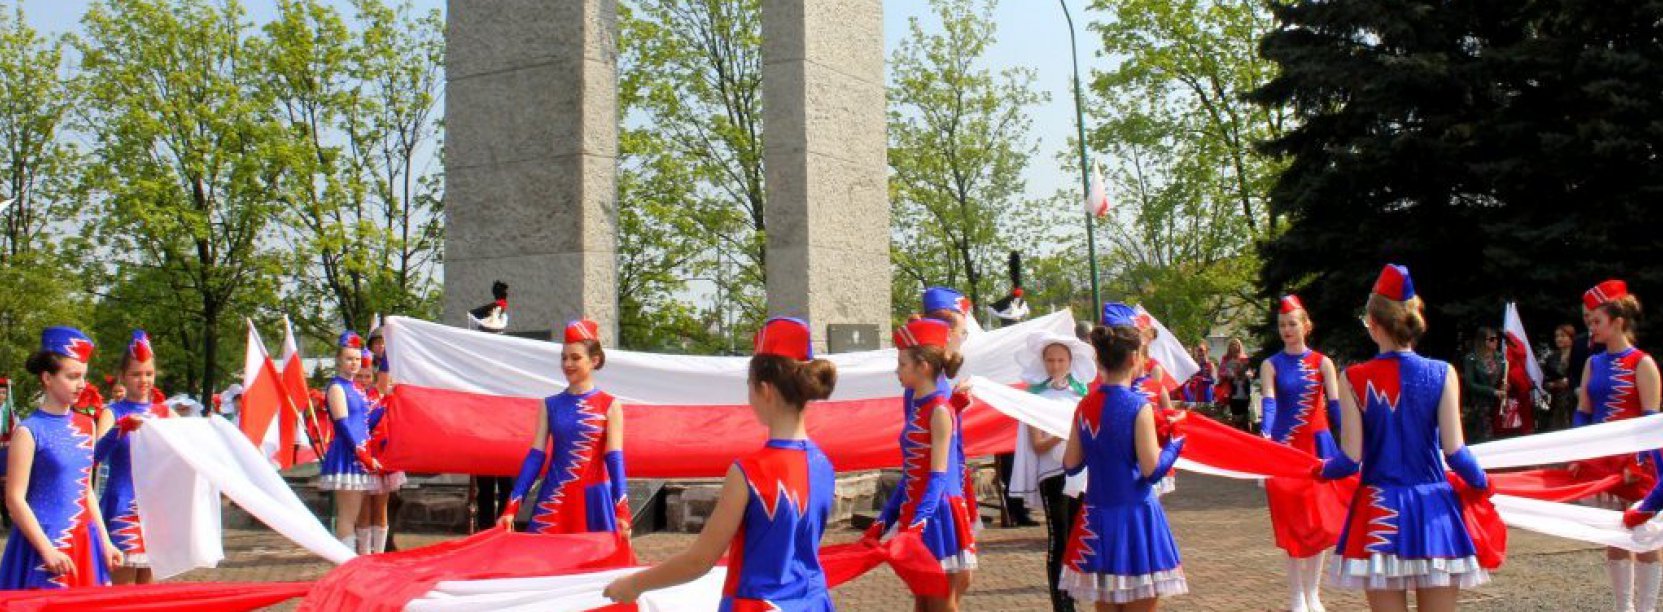 Kilkanaście dziewczyn w niebieskich strojach trzyma szarfy w barwach flagi Polski, za nimi pomnik z metalowym godłem